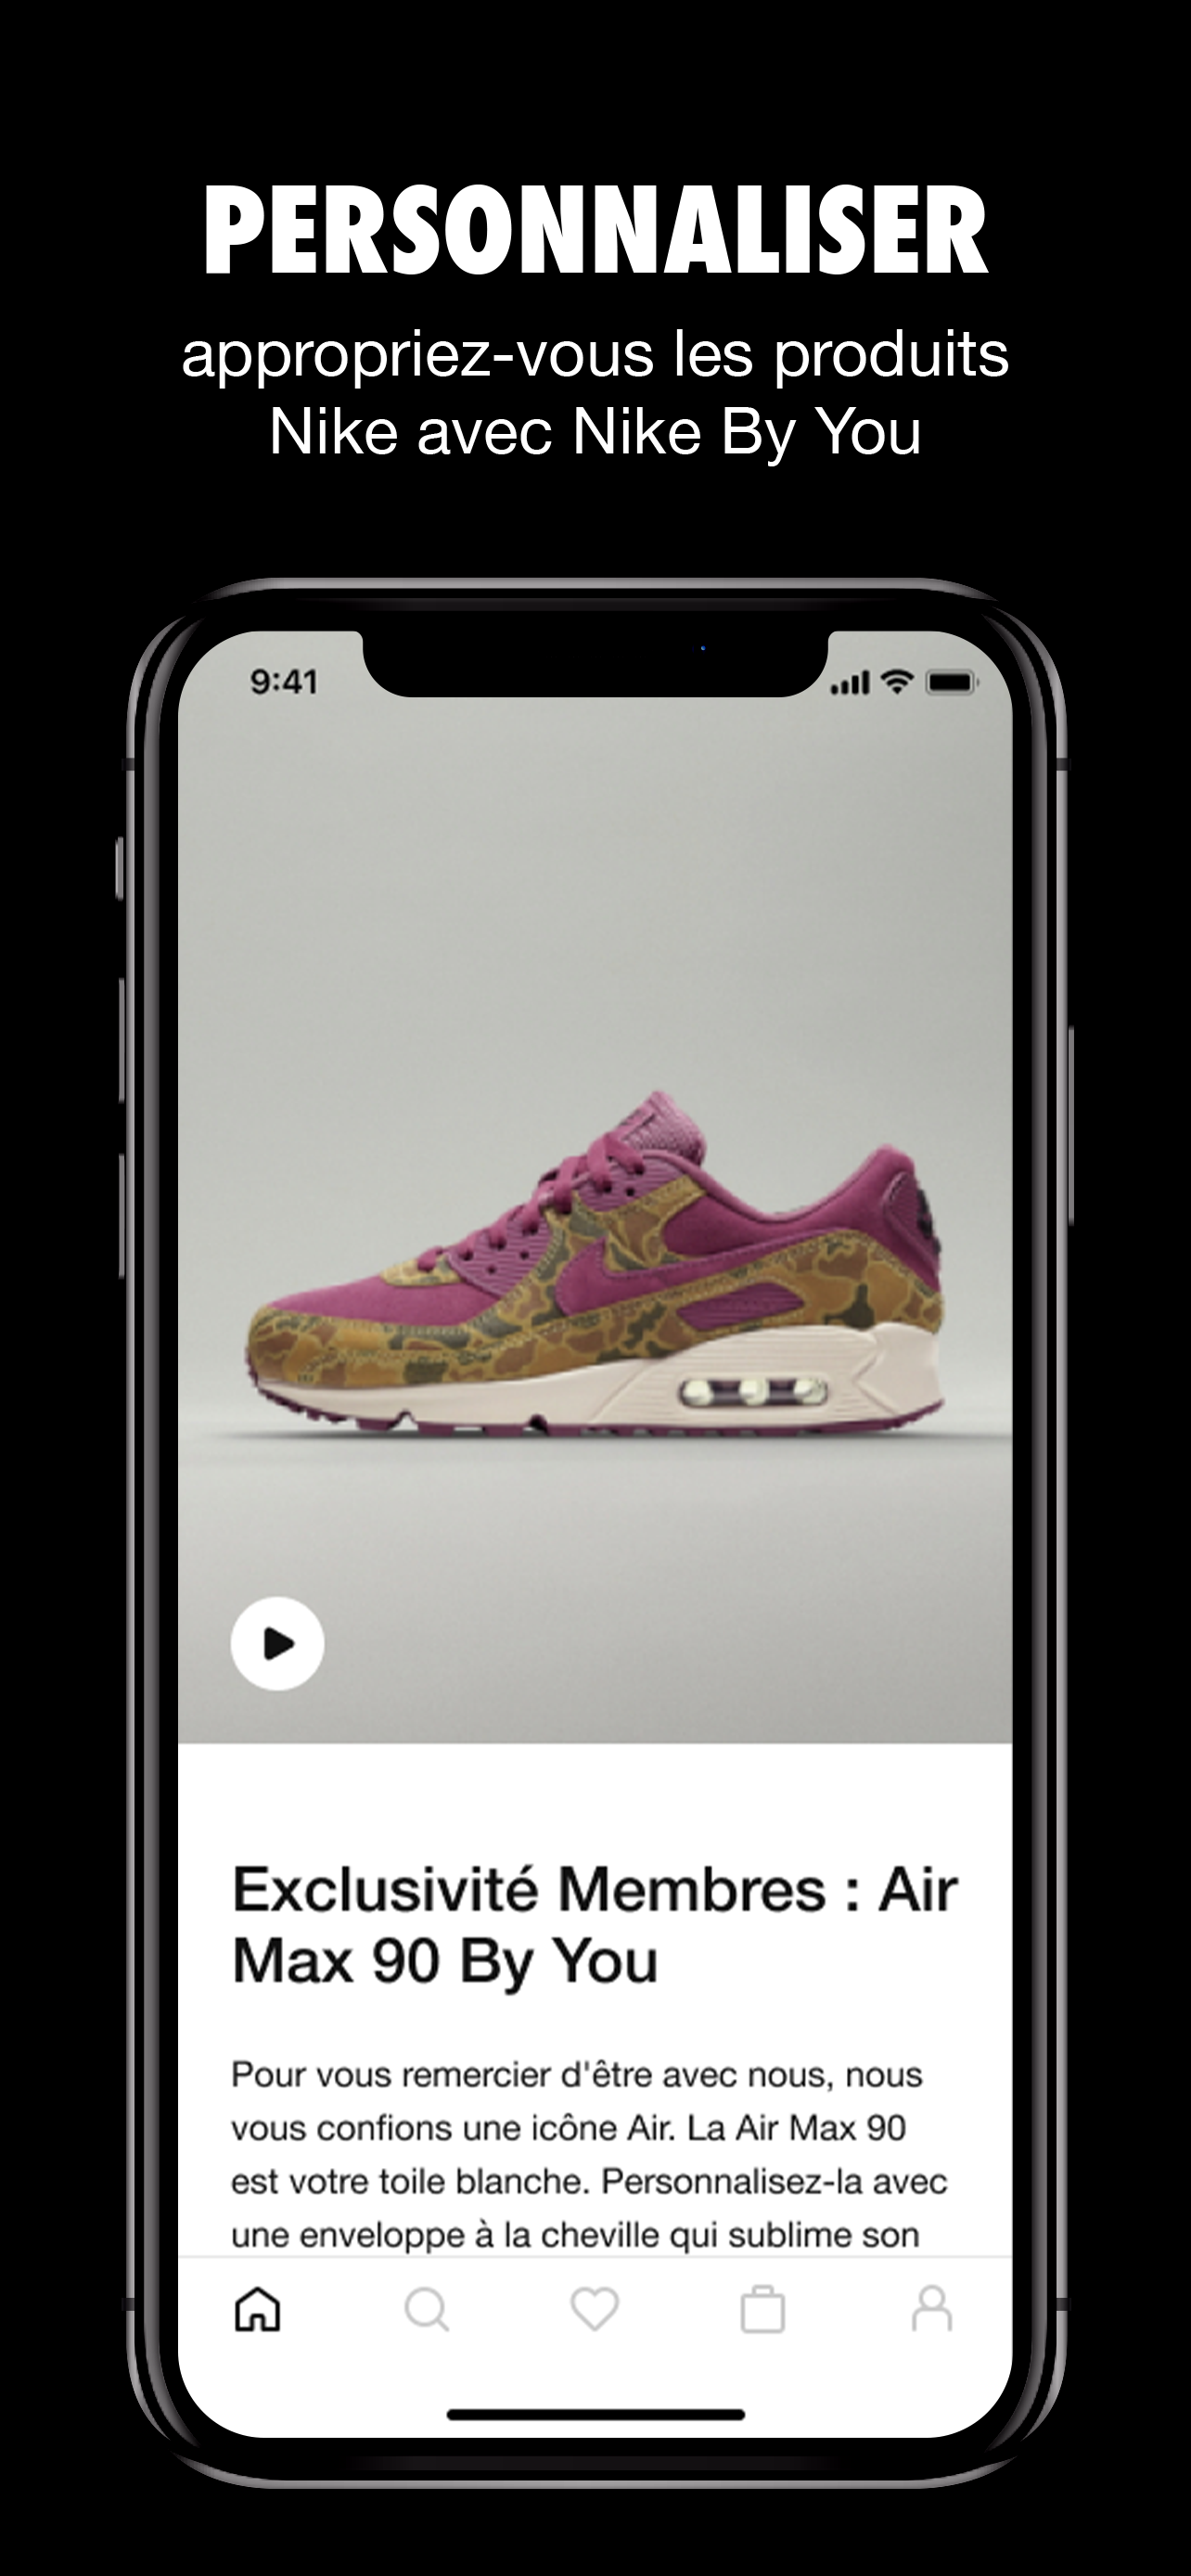 Nike : Shopping sport et mode - Overview - Apple App Store - France